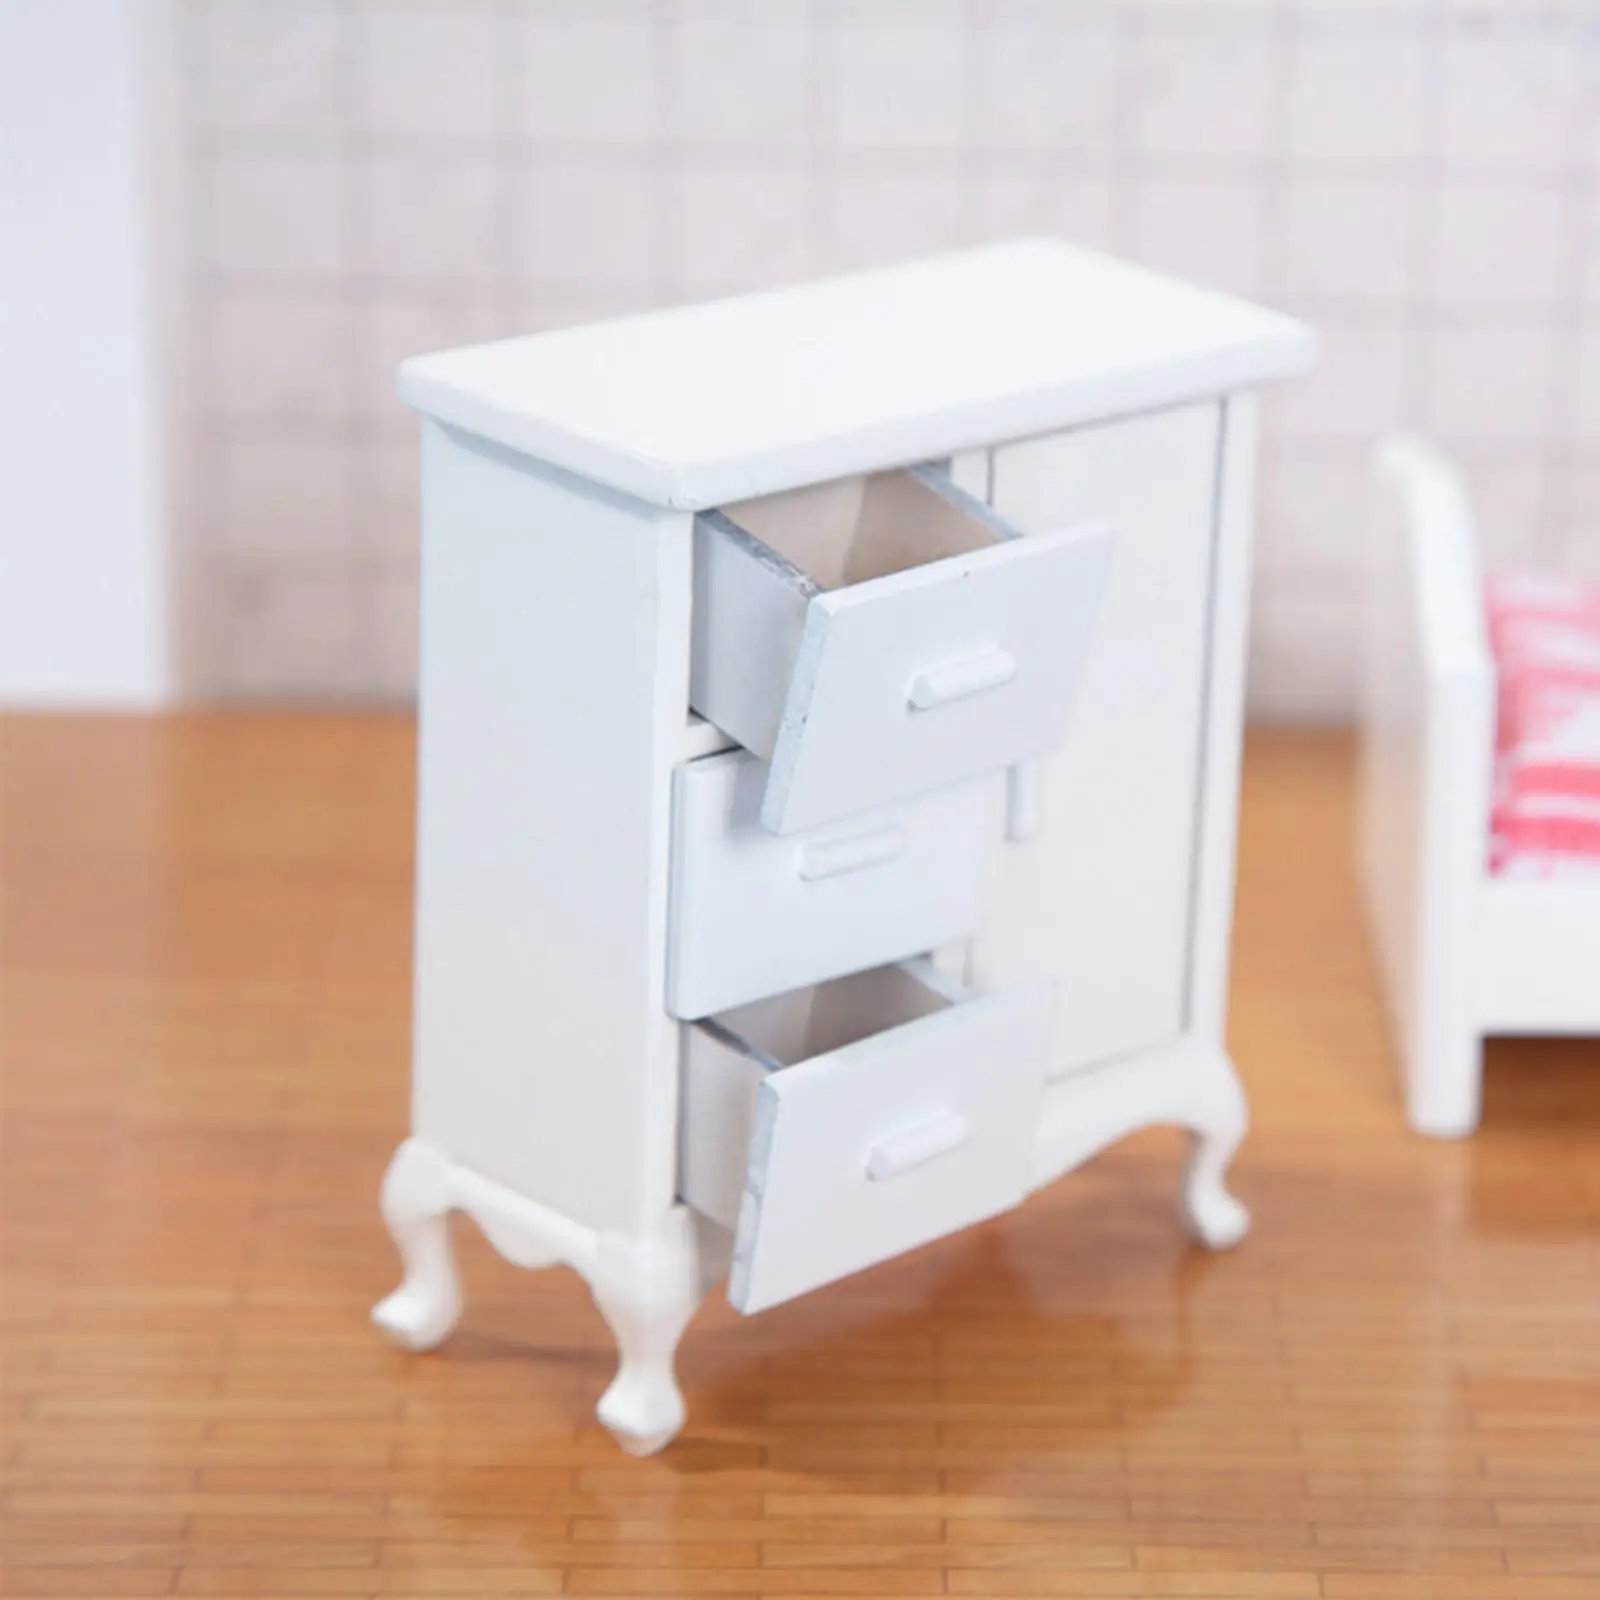 Miniature Wooden Dollhouse Cabinet for Landscape Decorations Micro Landscape